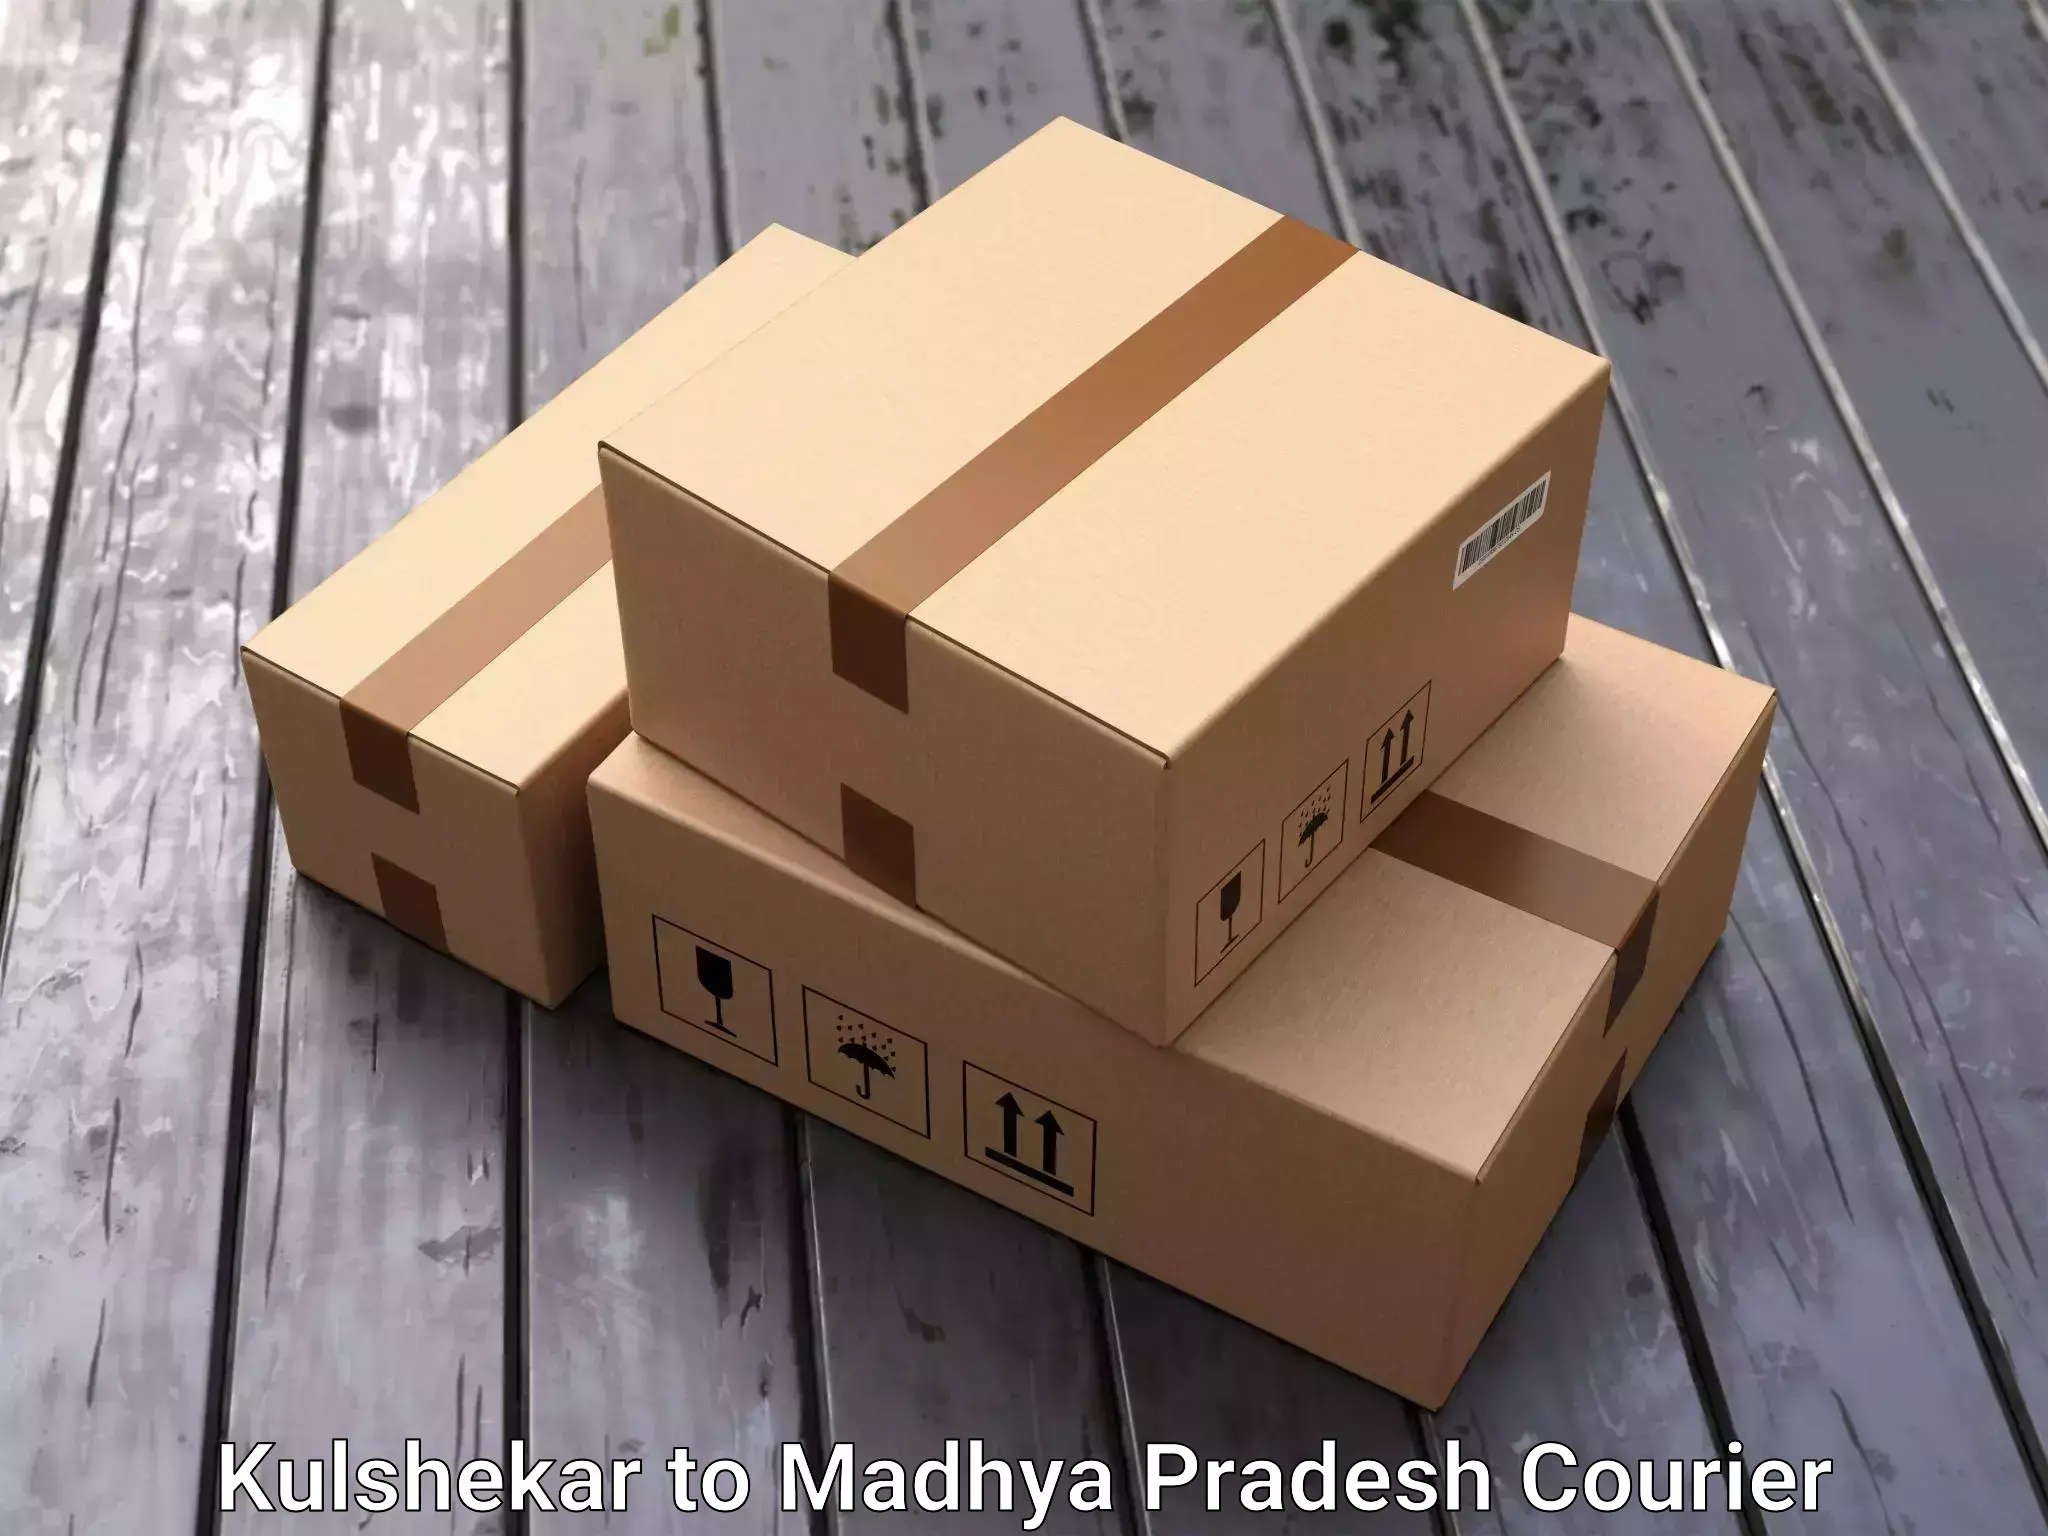 Furniture movers and packers Kulshekar to Madhya Pradesh